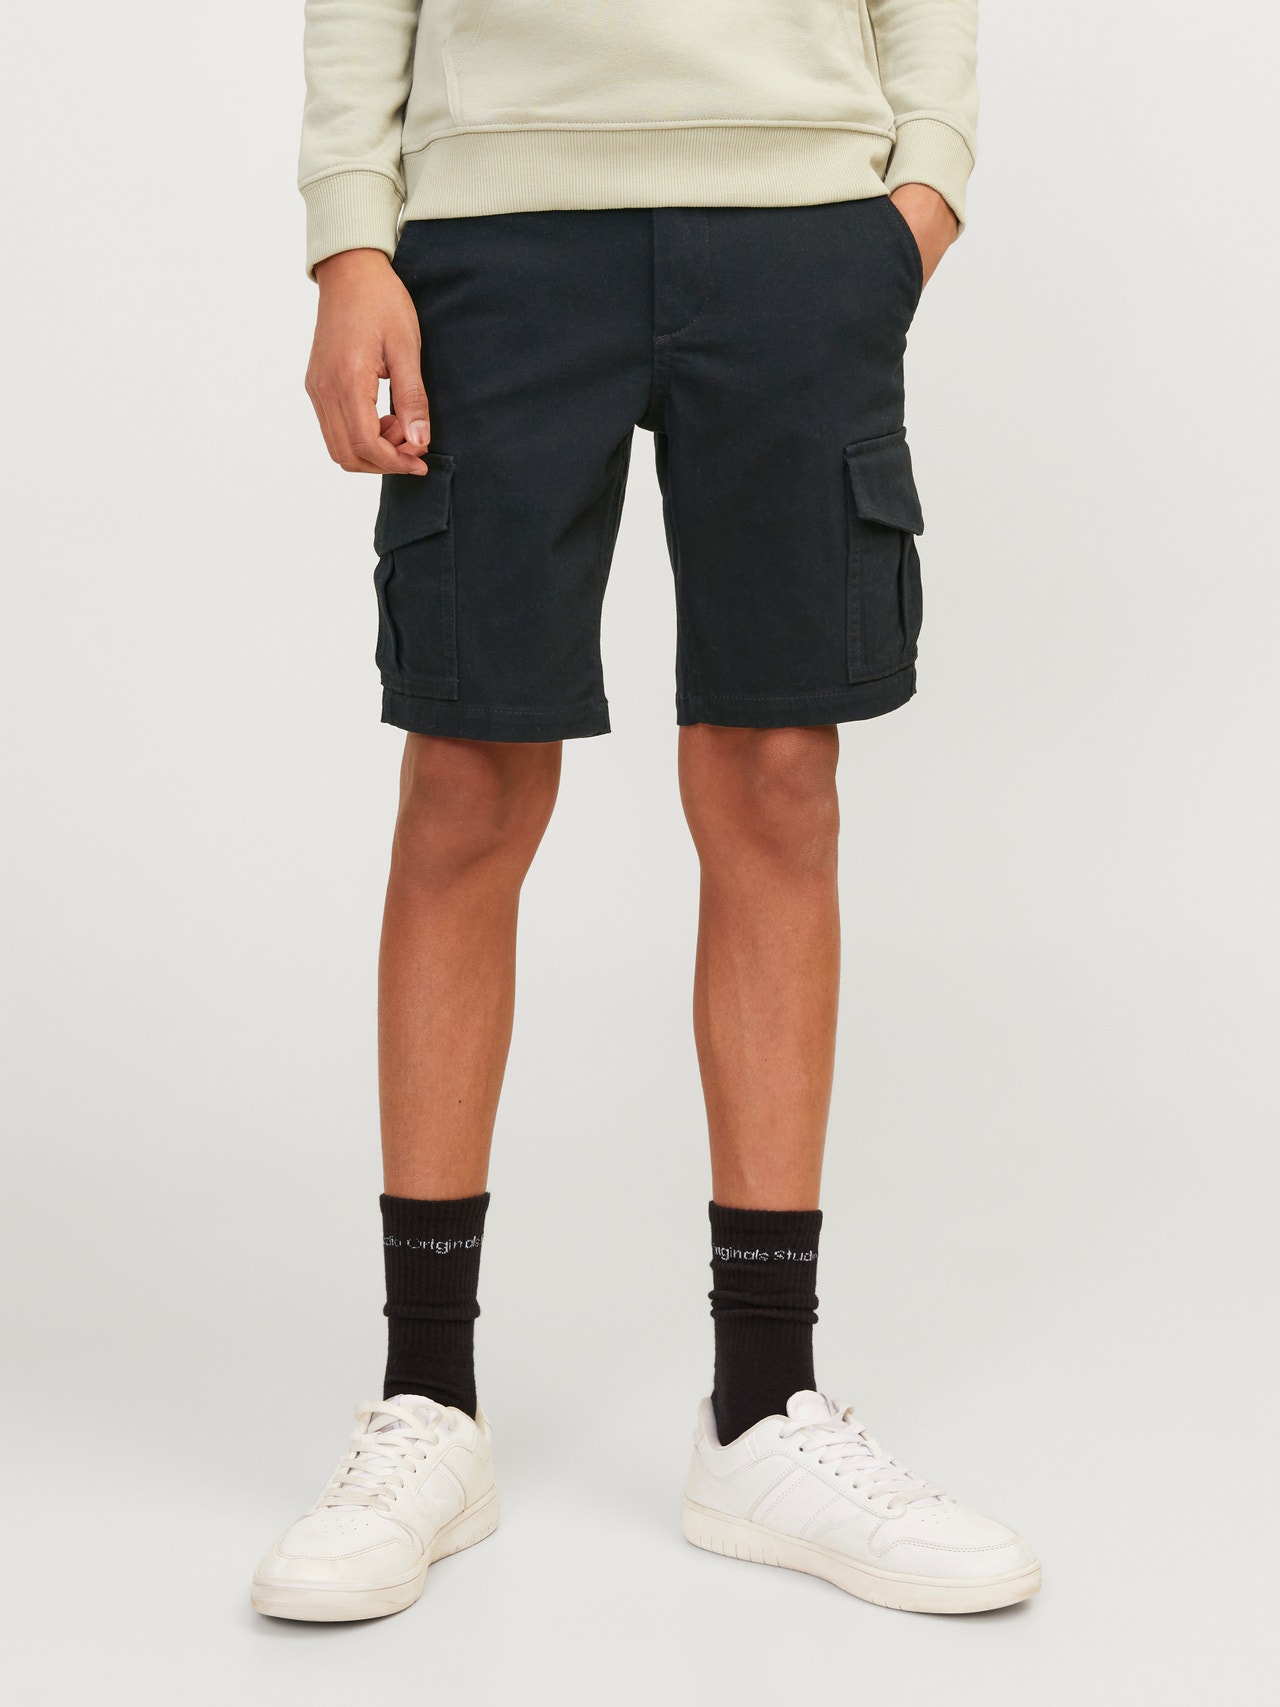 Jack & Jones Cargo Fit Cargo shorts Junior -Black - 12182856